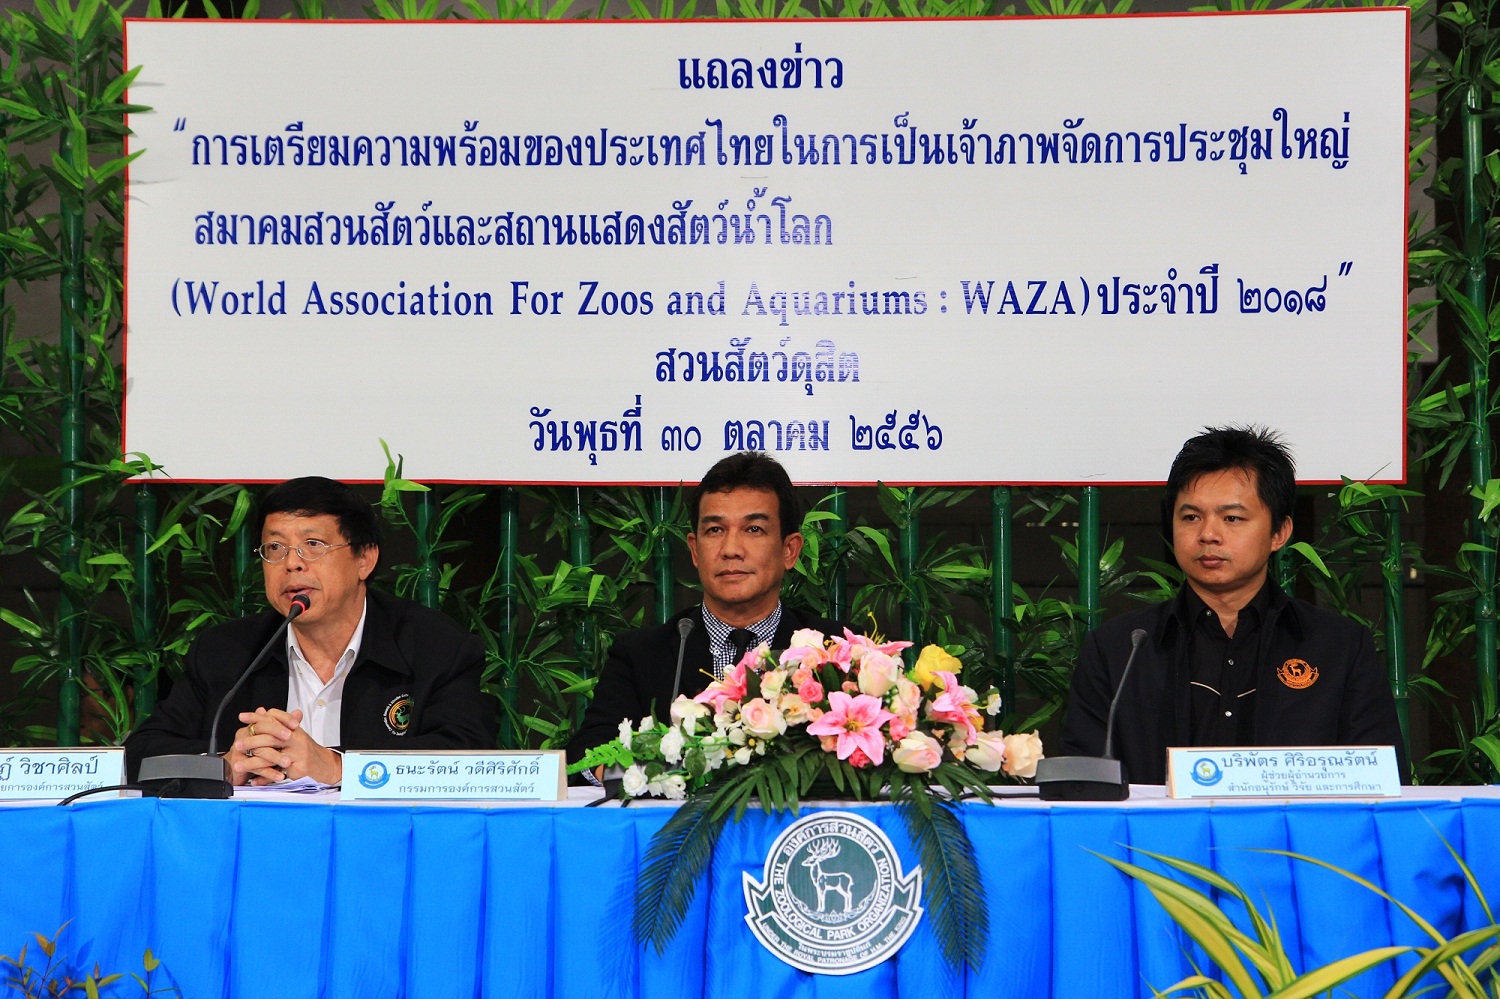 ไทยเป็นเจ้าภาพการประชุมใหญ่และประชุมวิชาการของสมาคม สวนสัตว์และอควอเรี่ยมโลก World Association for Zoos and Aquariums ( WAZA )